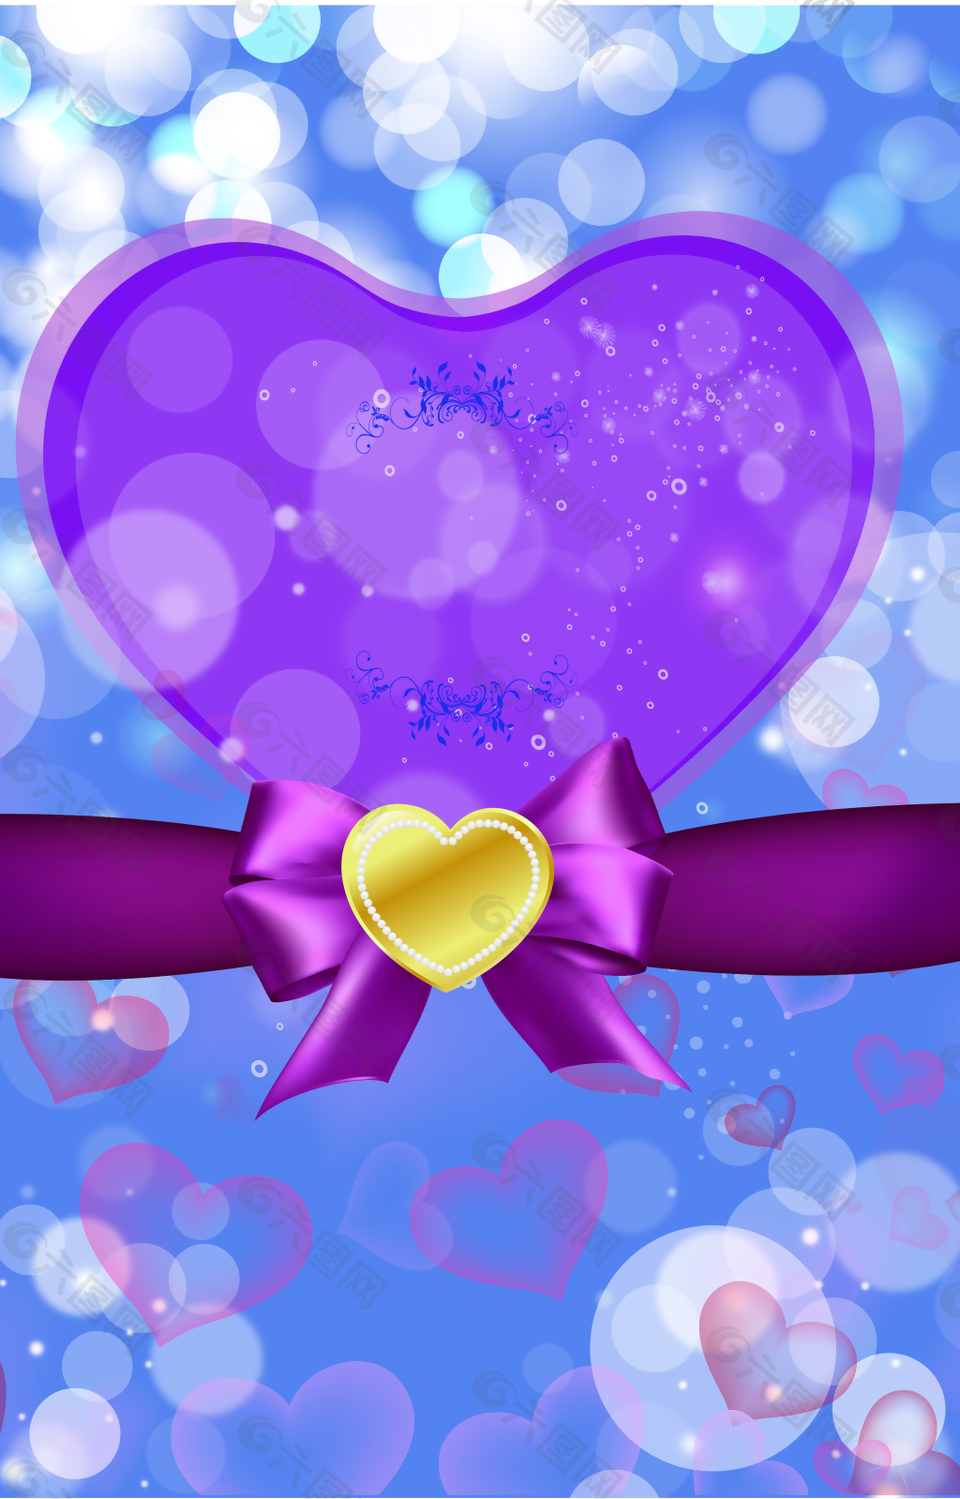 紫色爱心下的蝴蝶结背景素材